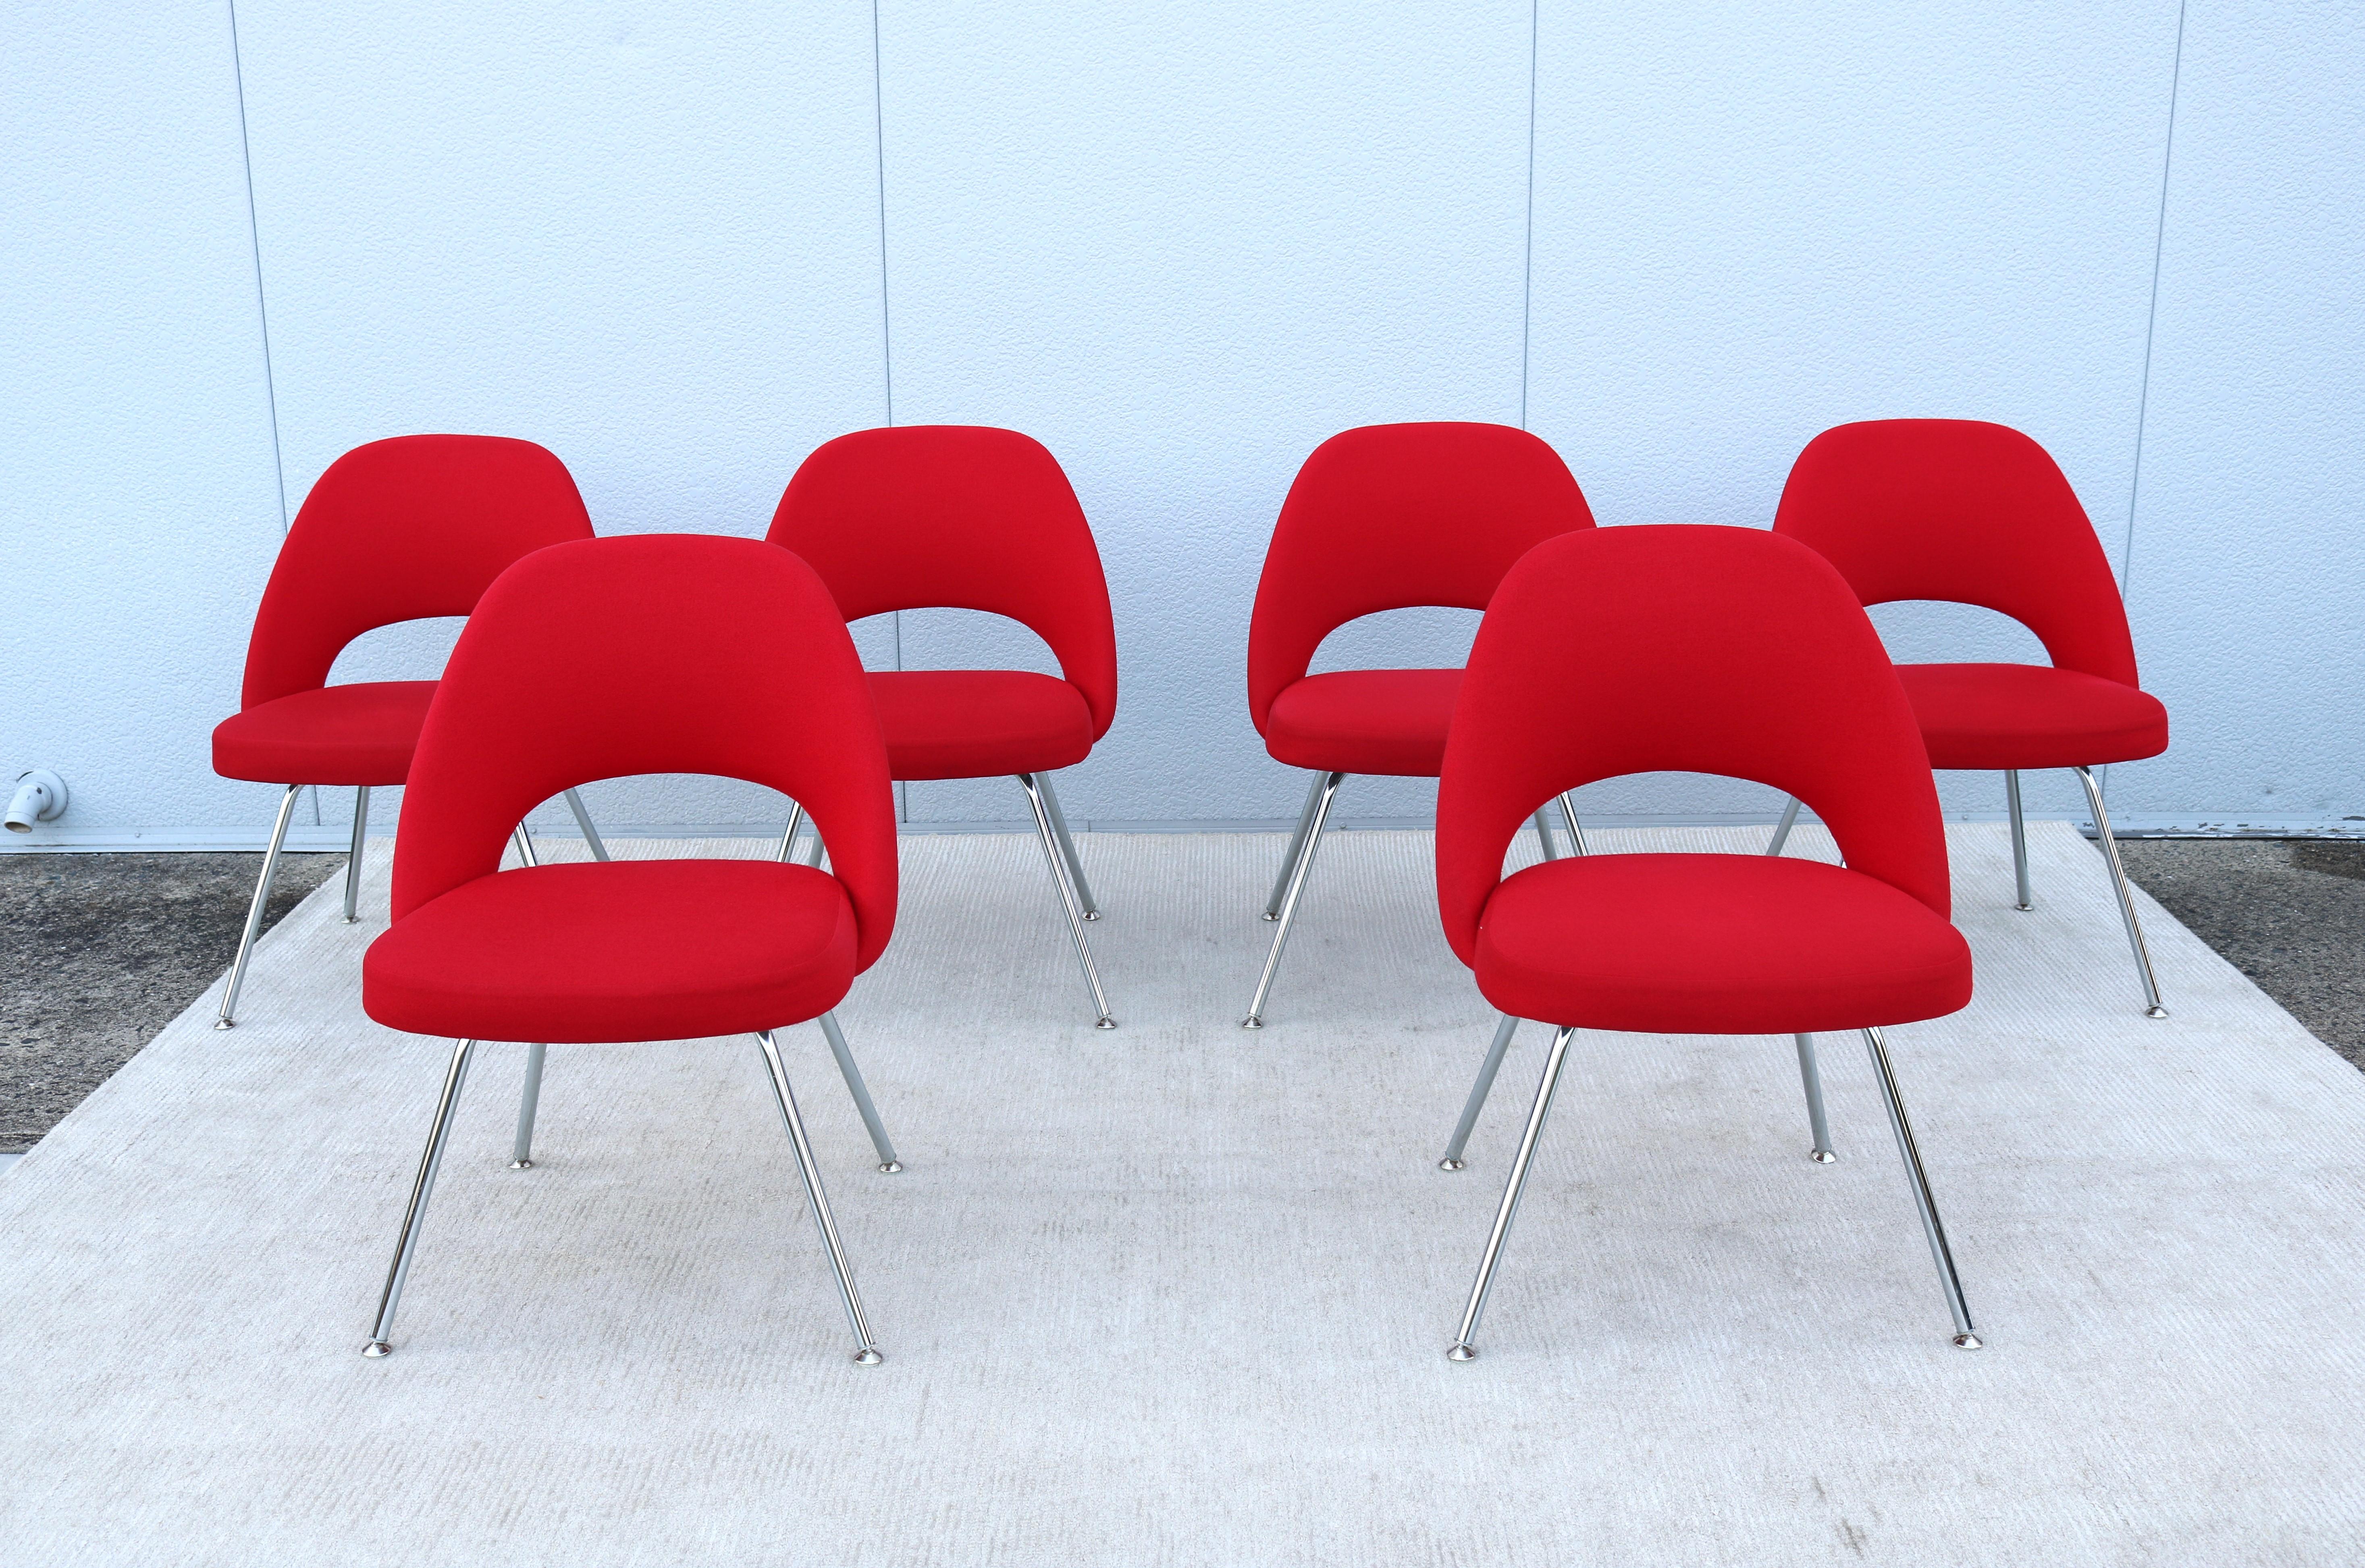 Superbe ensemble de six fauteuils de direction sans accoudoirs Saarinen de Knoll, authentiquement moderne du milieu du siècle dernier.
L'un des designs les plus populaires de Knoll qui a atteint un confort suprême grâce à la forme de sa coque.
Il a